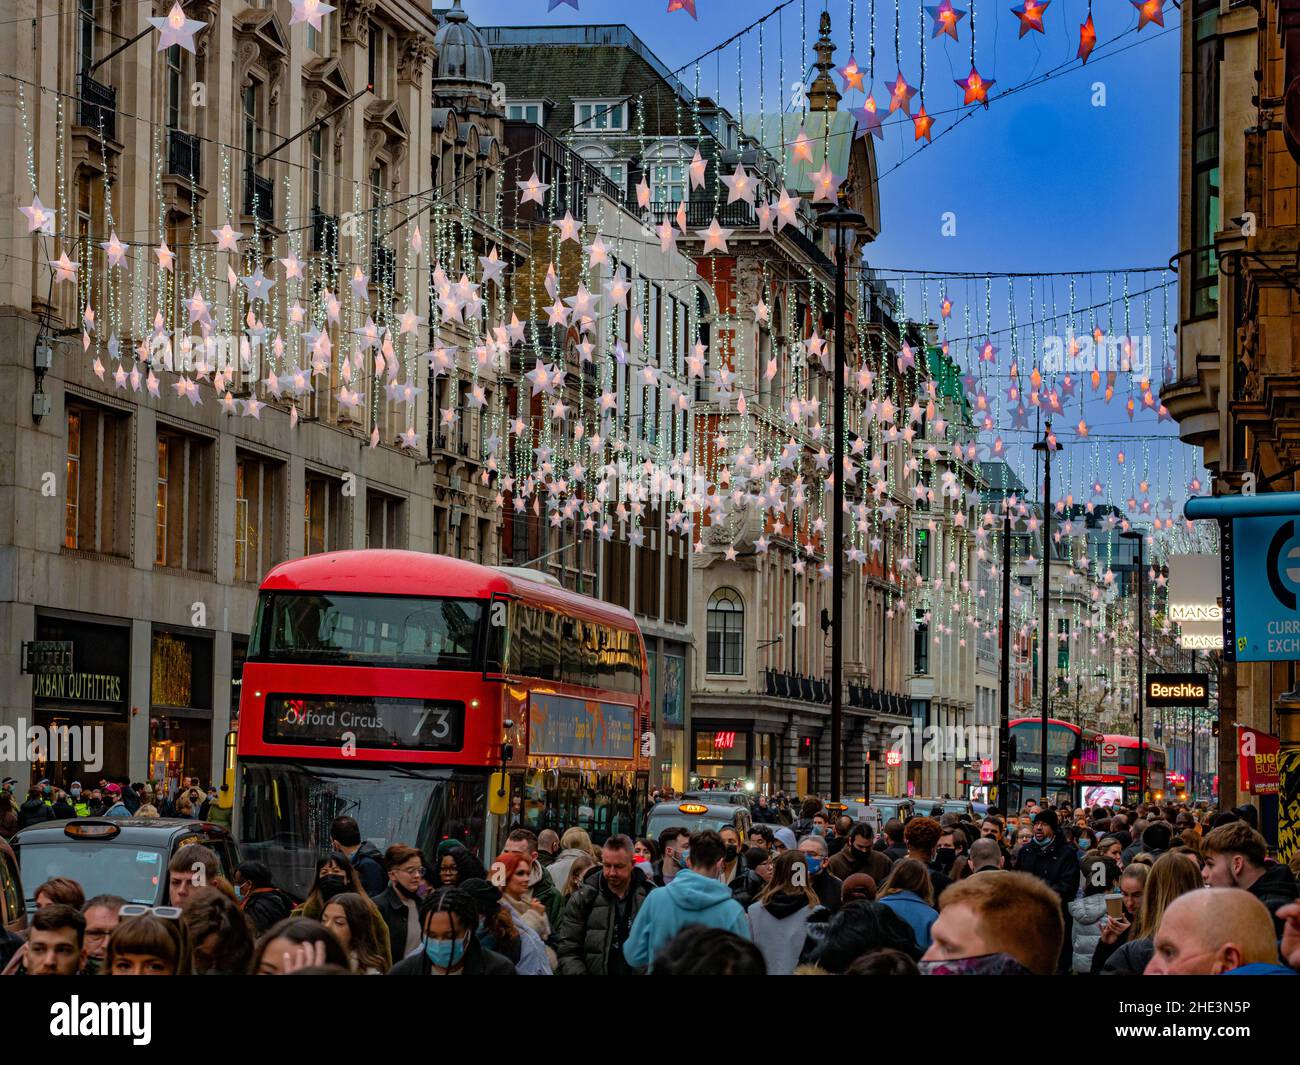 Londres, Inglaterra, Reino Unido - 18 de diciembre de 2021: Oxford street atestada por personas que disfrutan de las decoraciones de luces navideñas en el centro de Londres Foto de stock